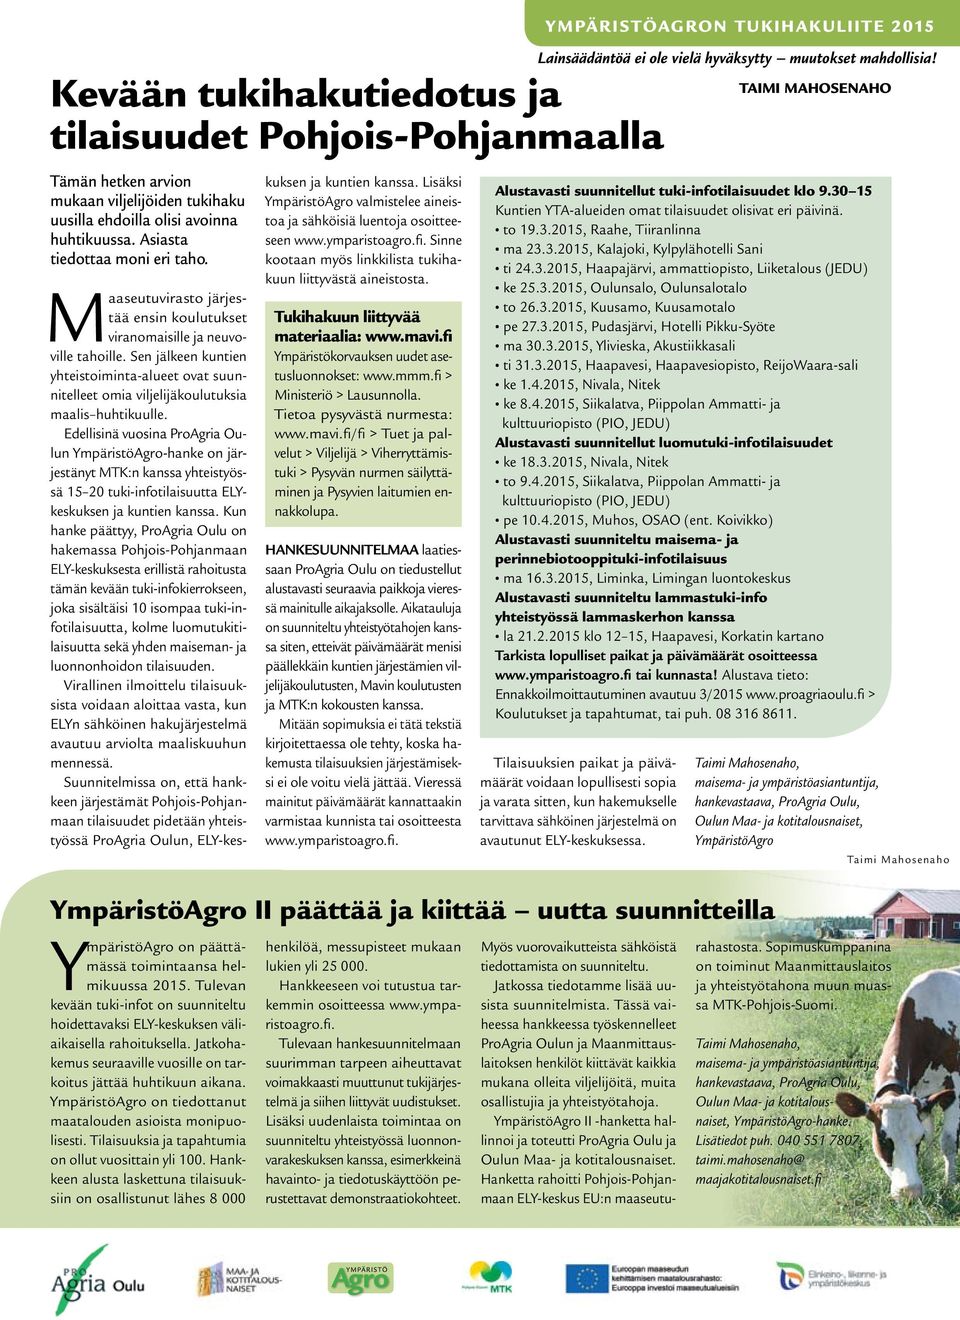 Edellisinä vuosina ProAgria Oulun YmpäristöAgro-hanke on järjestänyt MTK:n kanssa yhteistyössä 15 20 tuki-infotilaisuutta ELYkeskuksen ja kuntien kanssa.